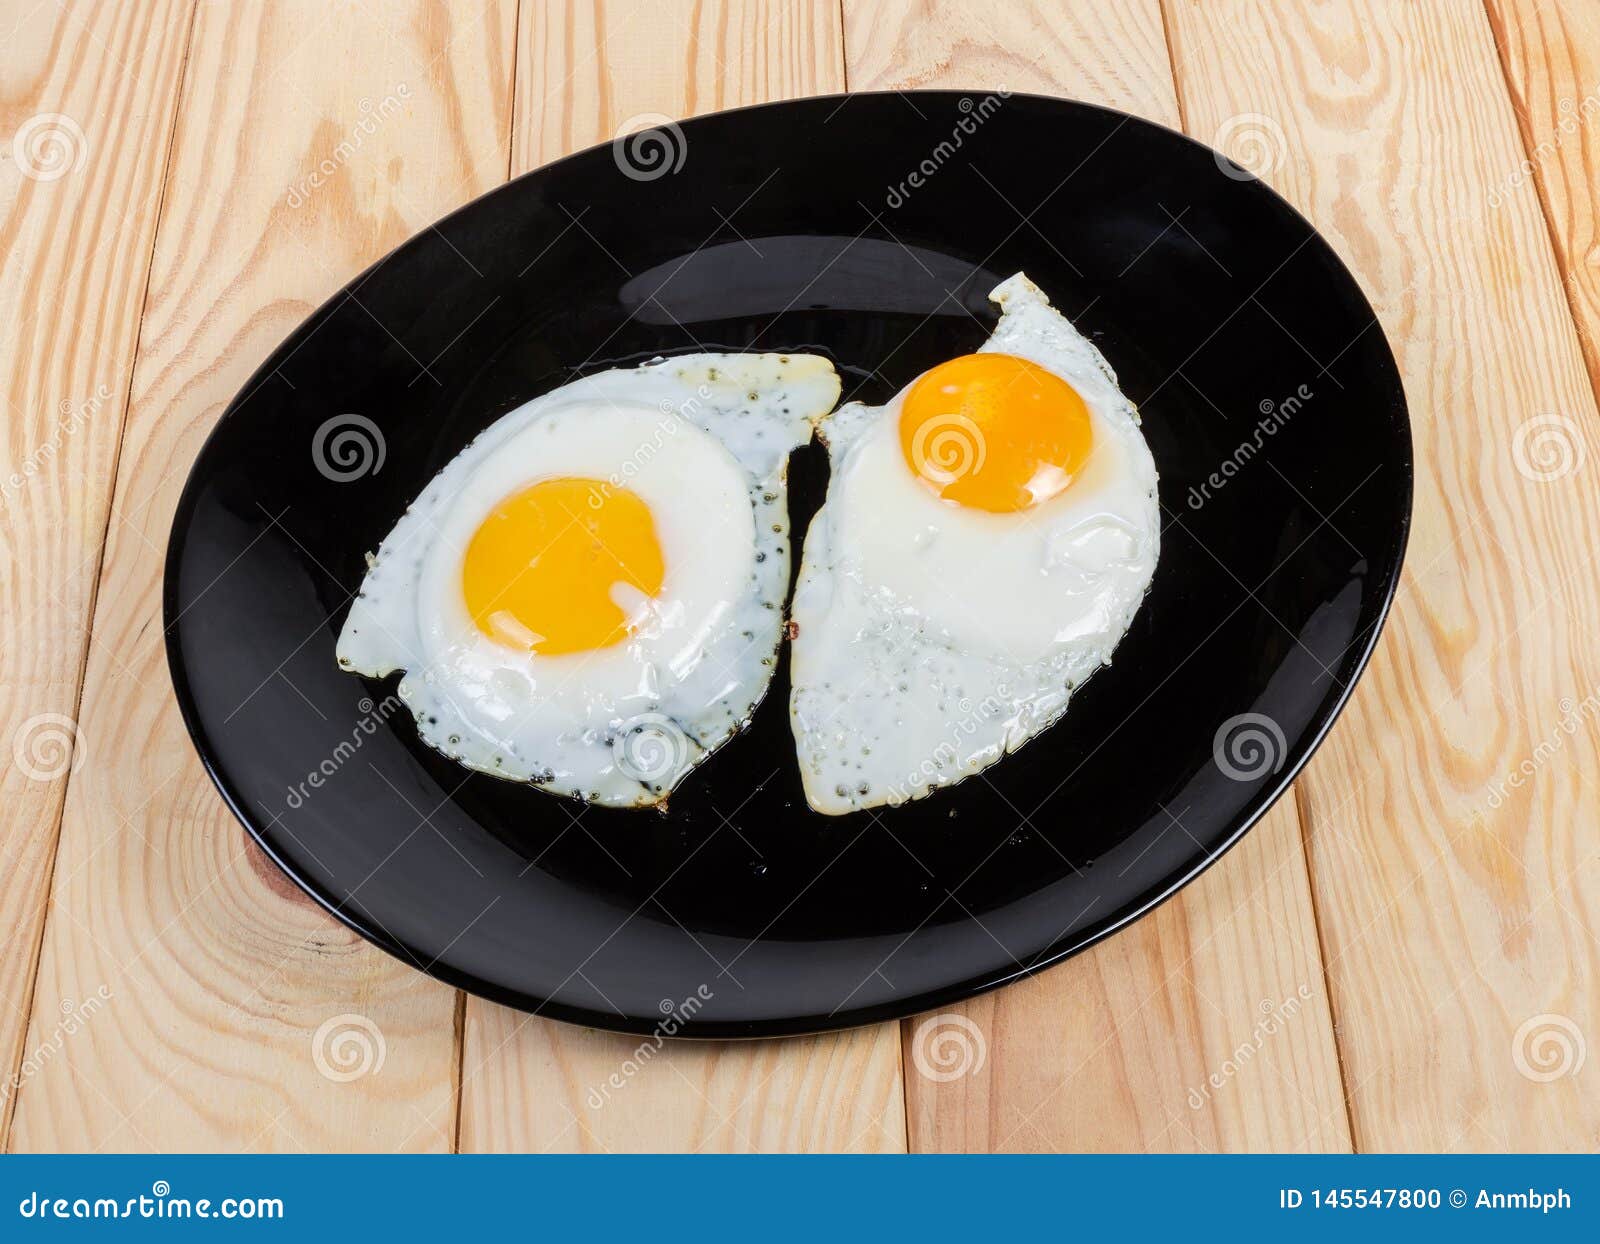 Яйцо обжаренное с двух. Яичница с двух сторон. Яичница обжаренная с двух сторон. Яйцо обжаренное с двух сторон. Яйцо жареное с 2 сторон.